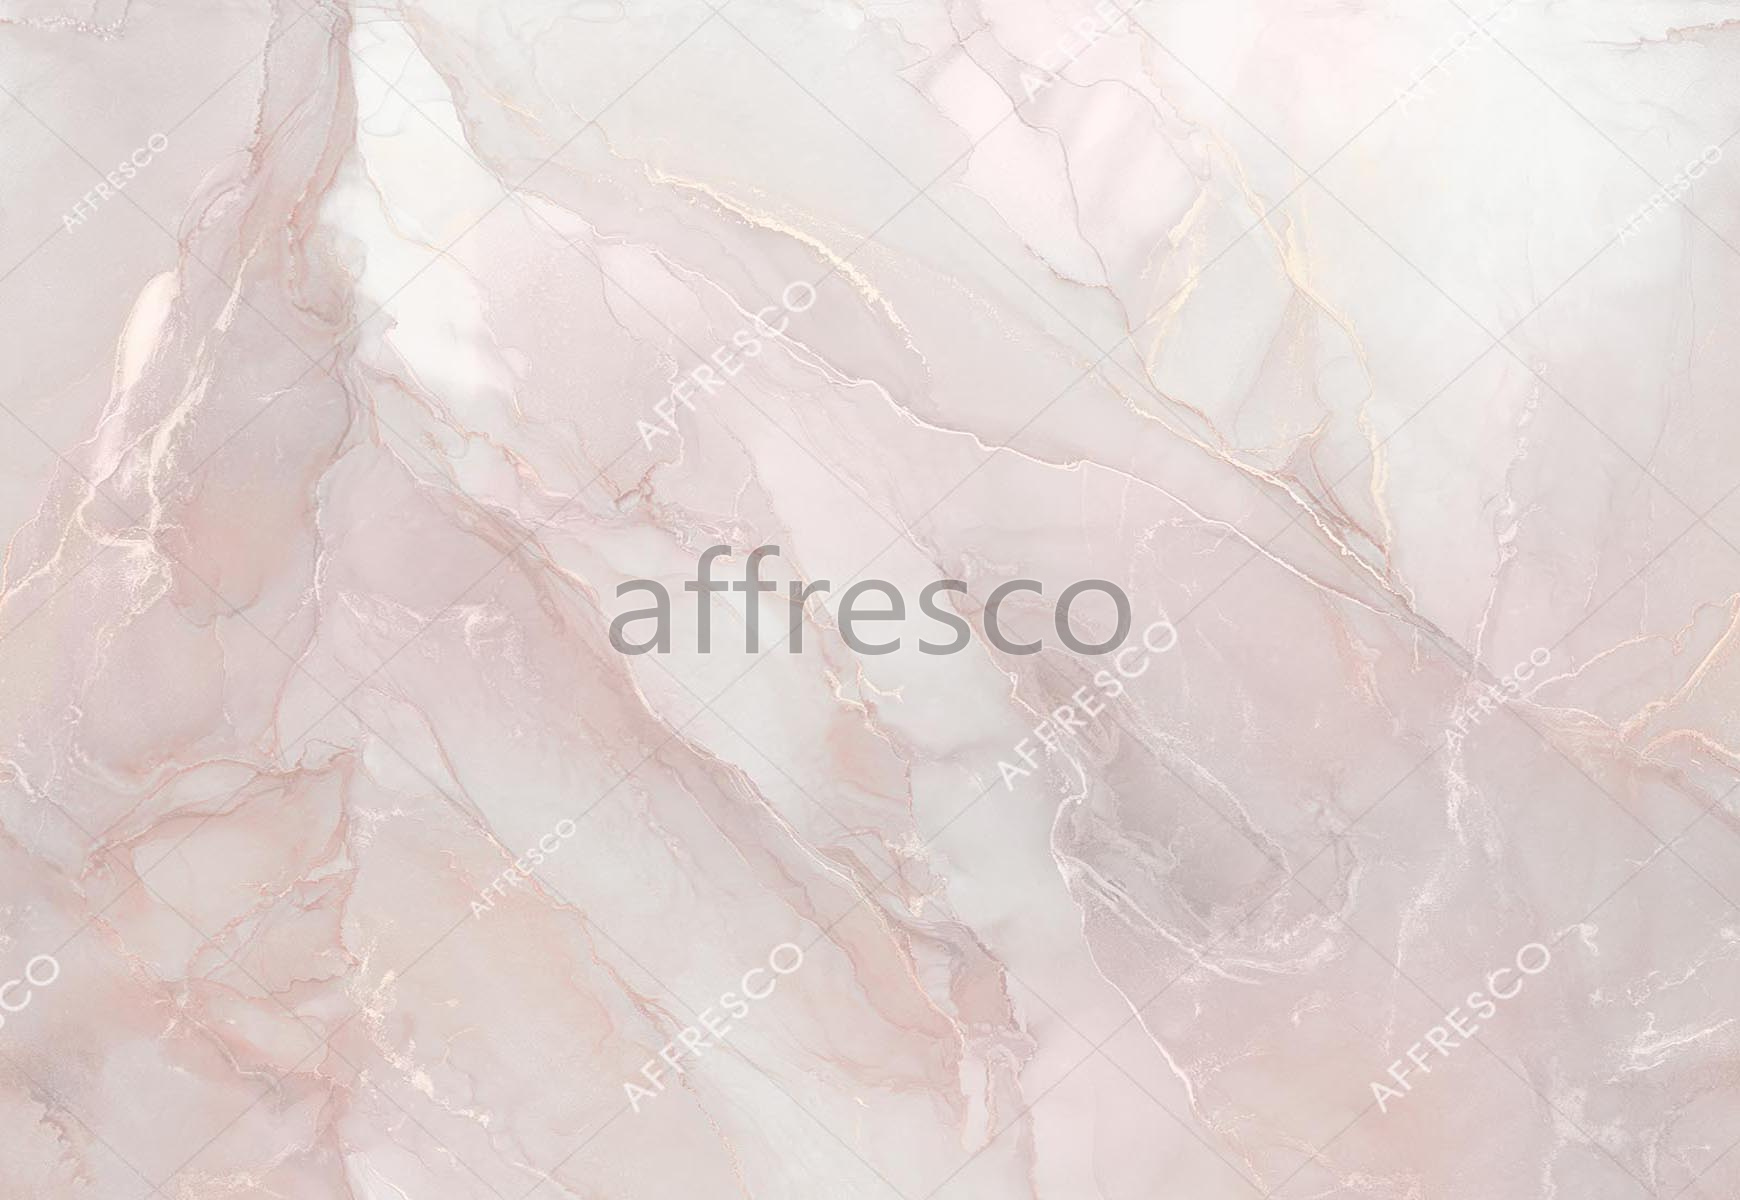 ID139019 | Fluid | stone cut | Affresco Factory